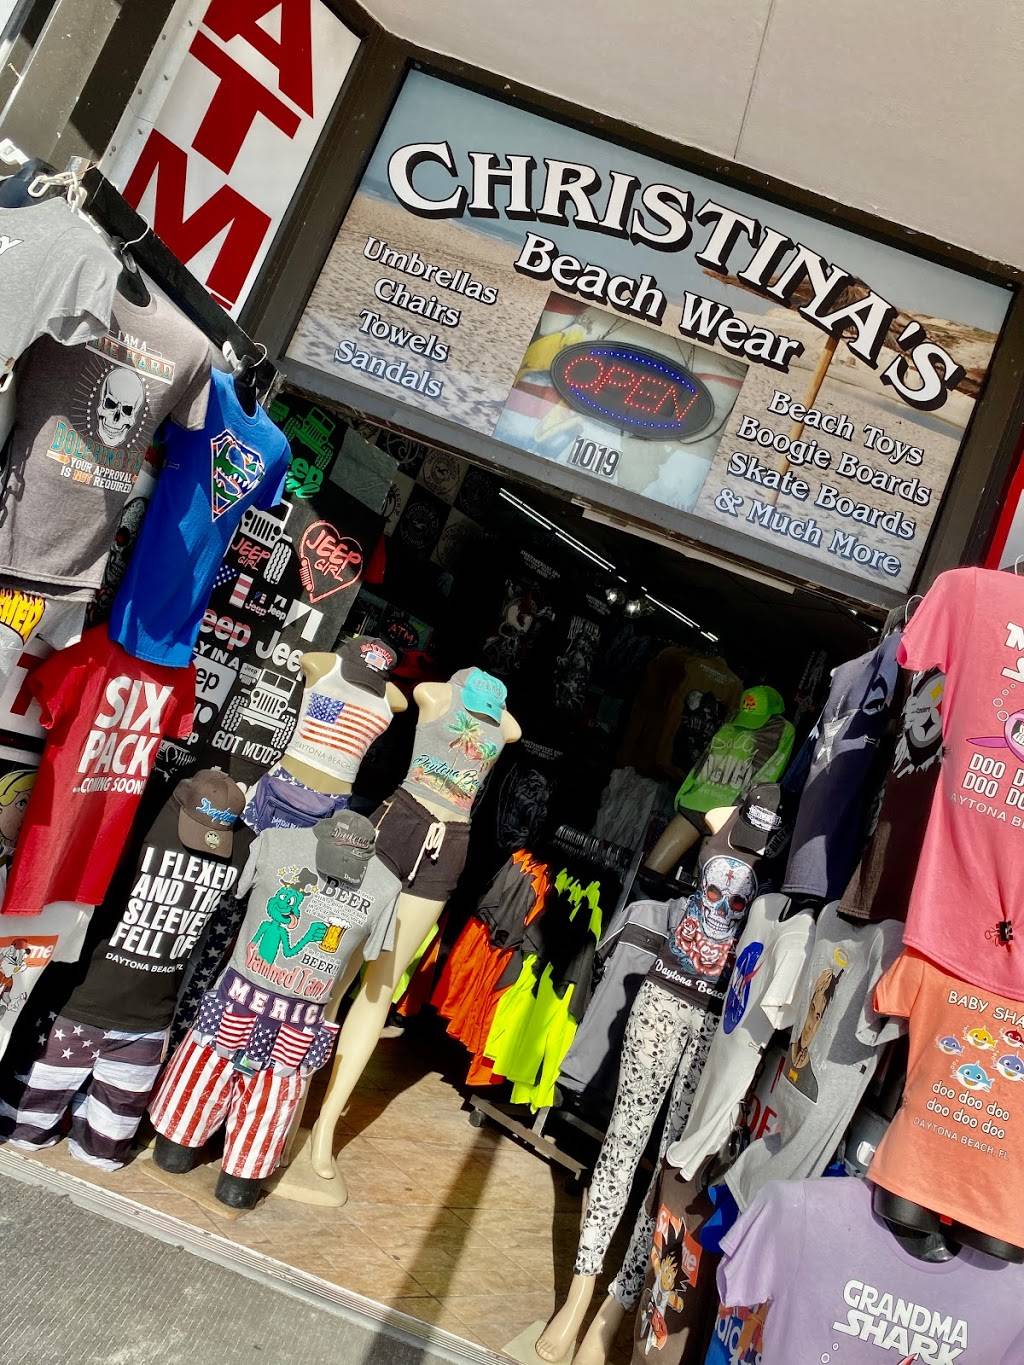 Christinas Beachwear & Gifts | 1019 Main St, Daytona Beach, FL 32118 | Phone: (386) 255-9132